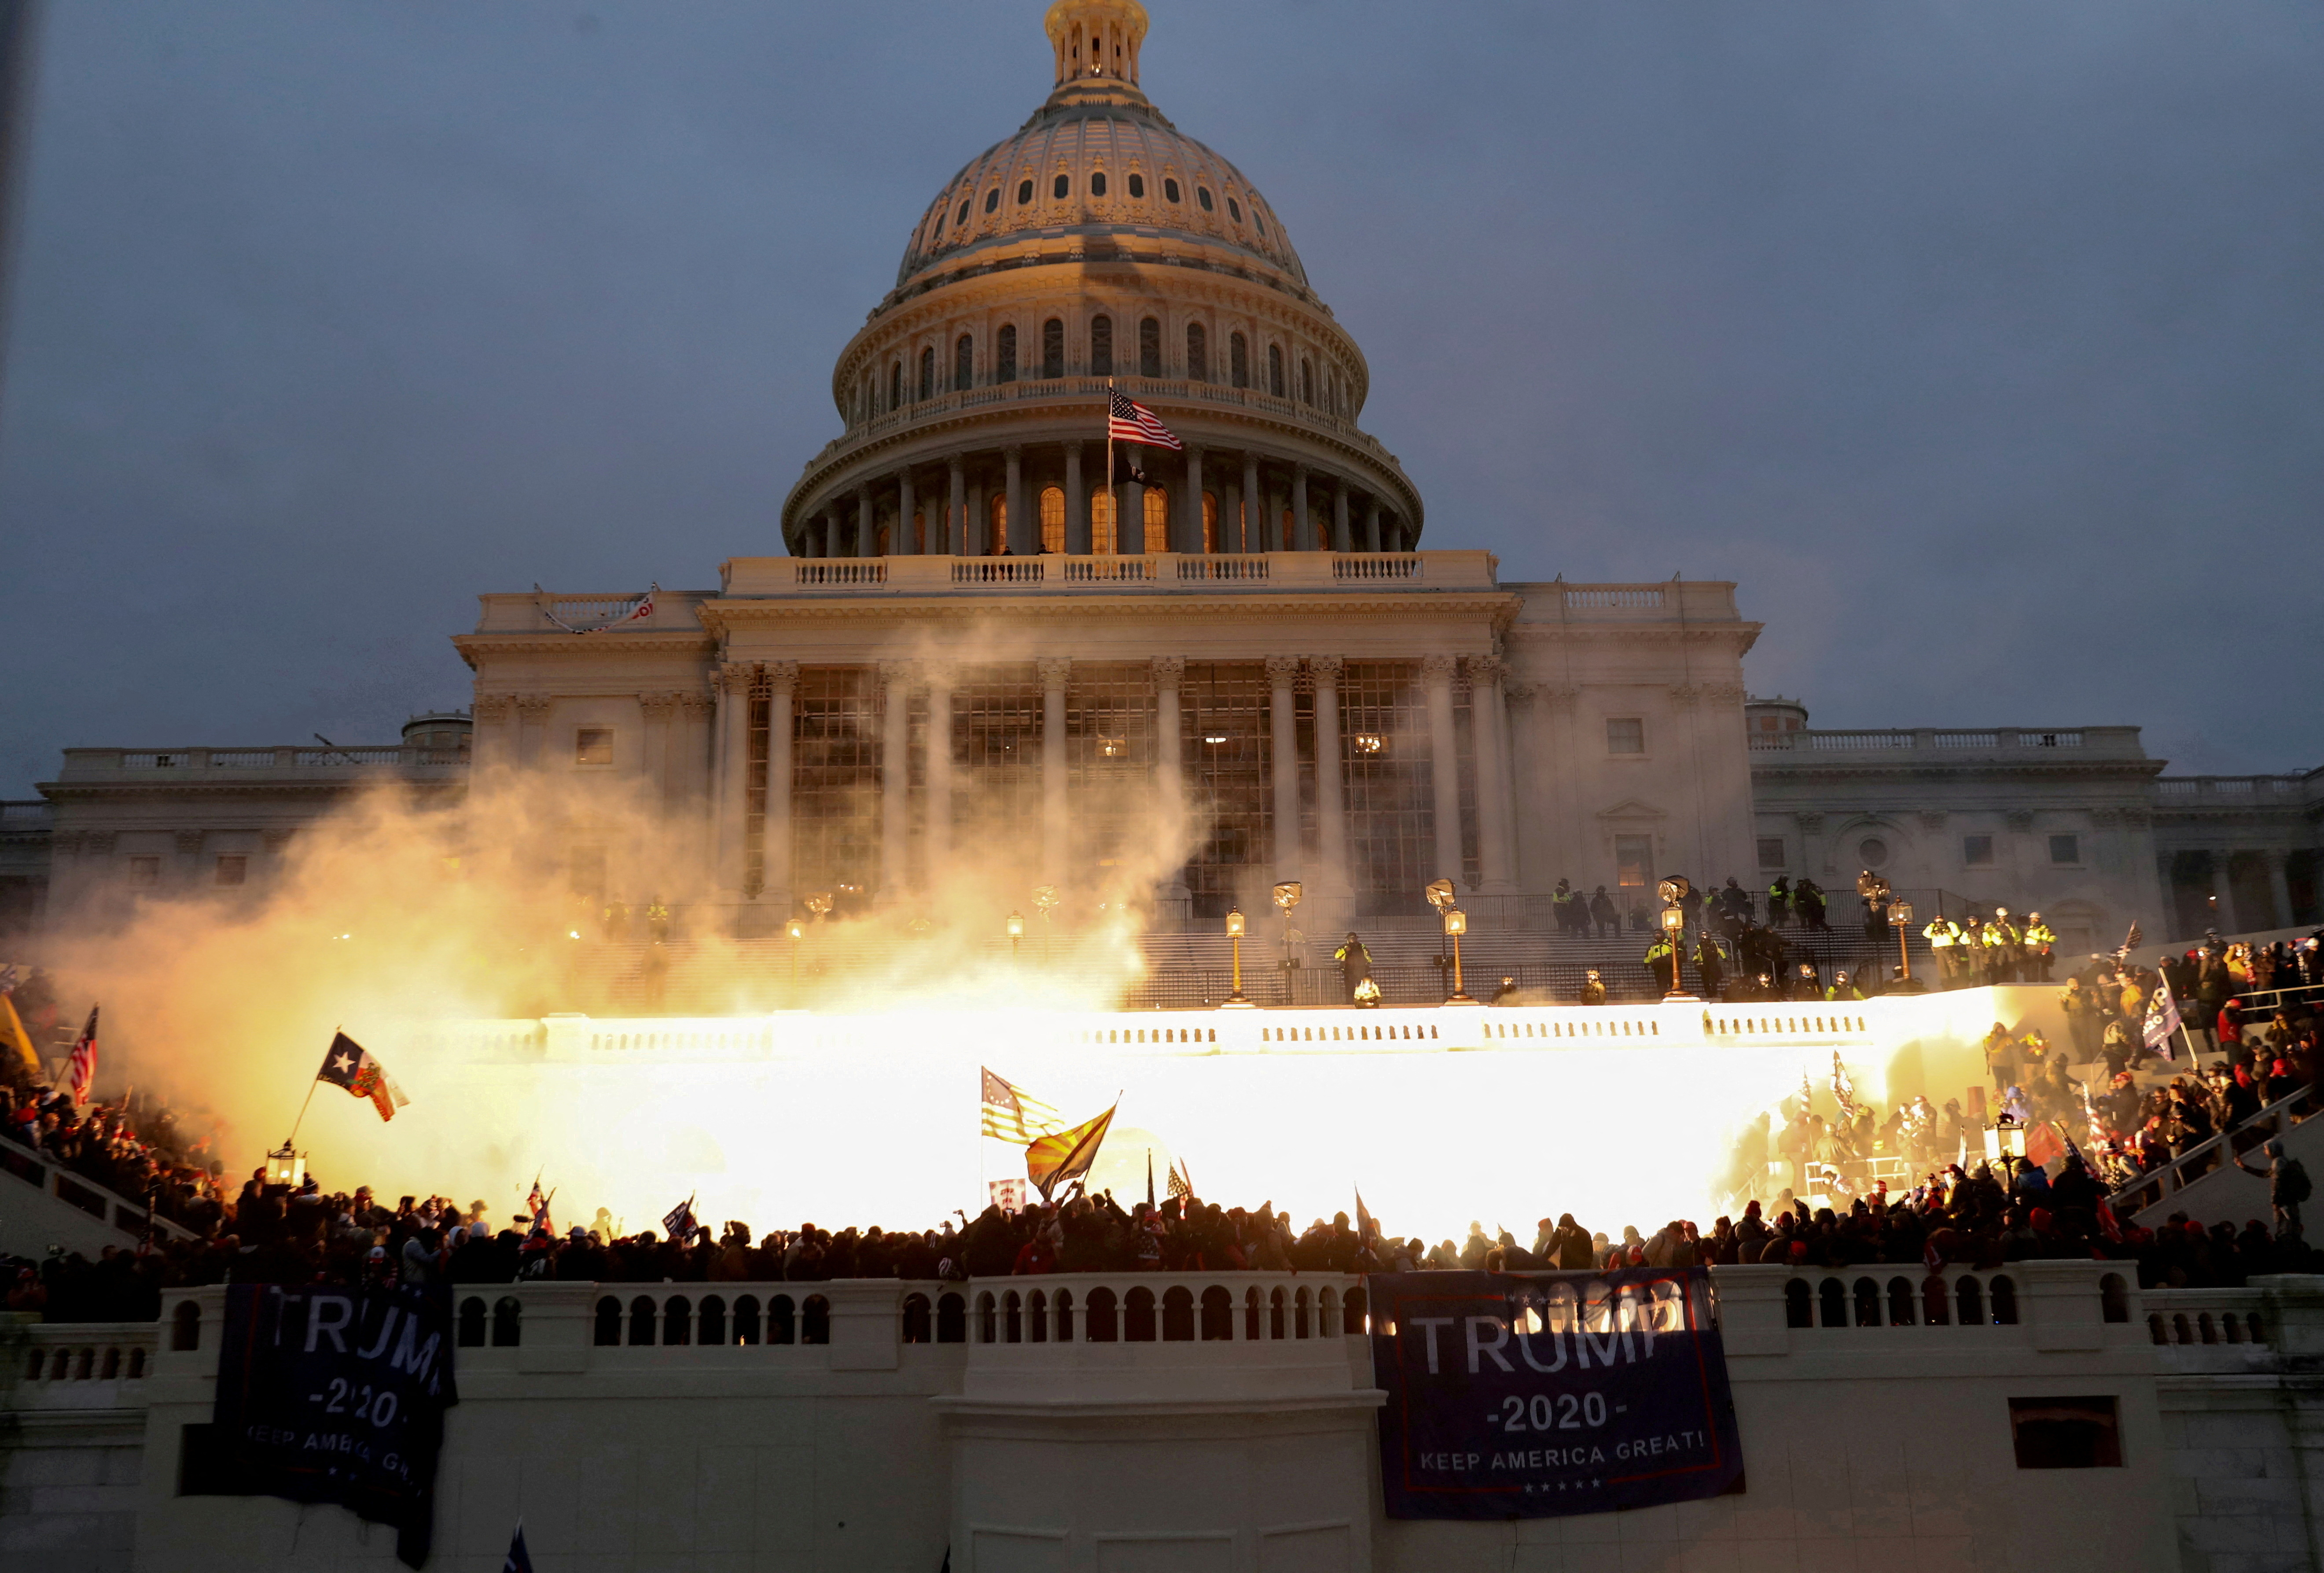 El 6 de enero de 2021 miles de seguidores de Trump se manifestaron frente al Capitolio y cerca de 800 irrumpieron en el edificio mientras se ratificaba la victoria electoral de Biden. El incidente dejó cinco muertos (Reuters)